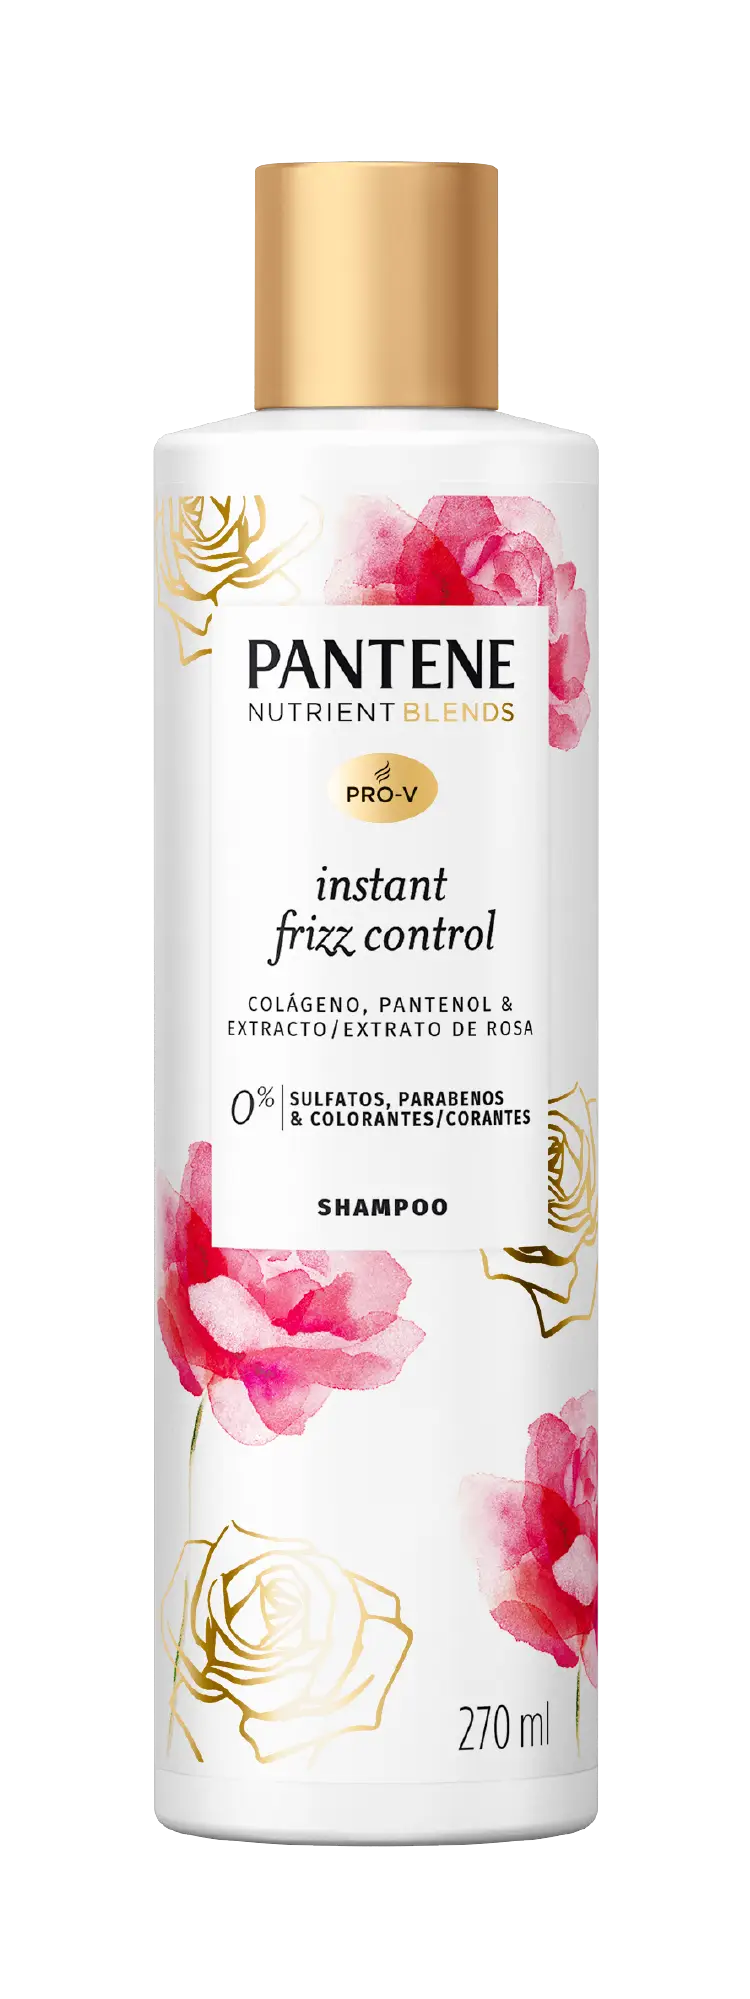 Shampoo Pantene antifrizz com extrato de rosas, colágeno e pantenol, sem sulfatos, sem parabenos e sem corantes.